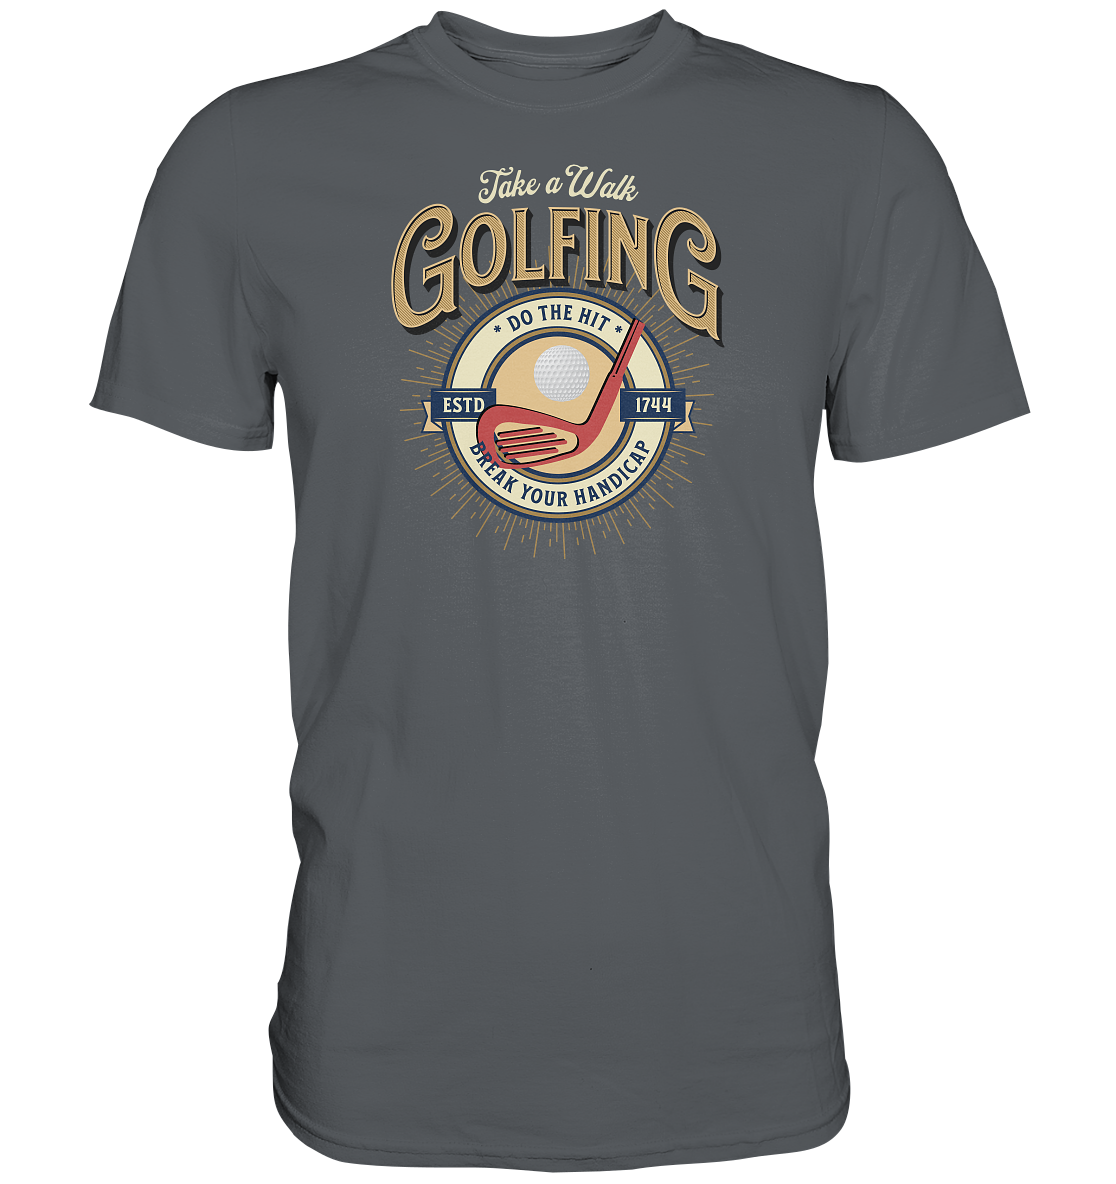 "Golfing...take a walk" - Premium Shirt